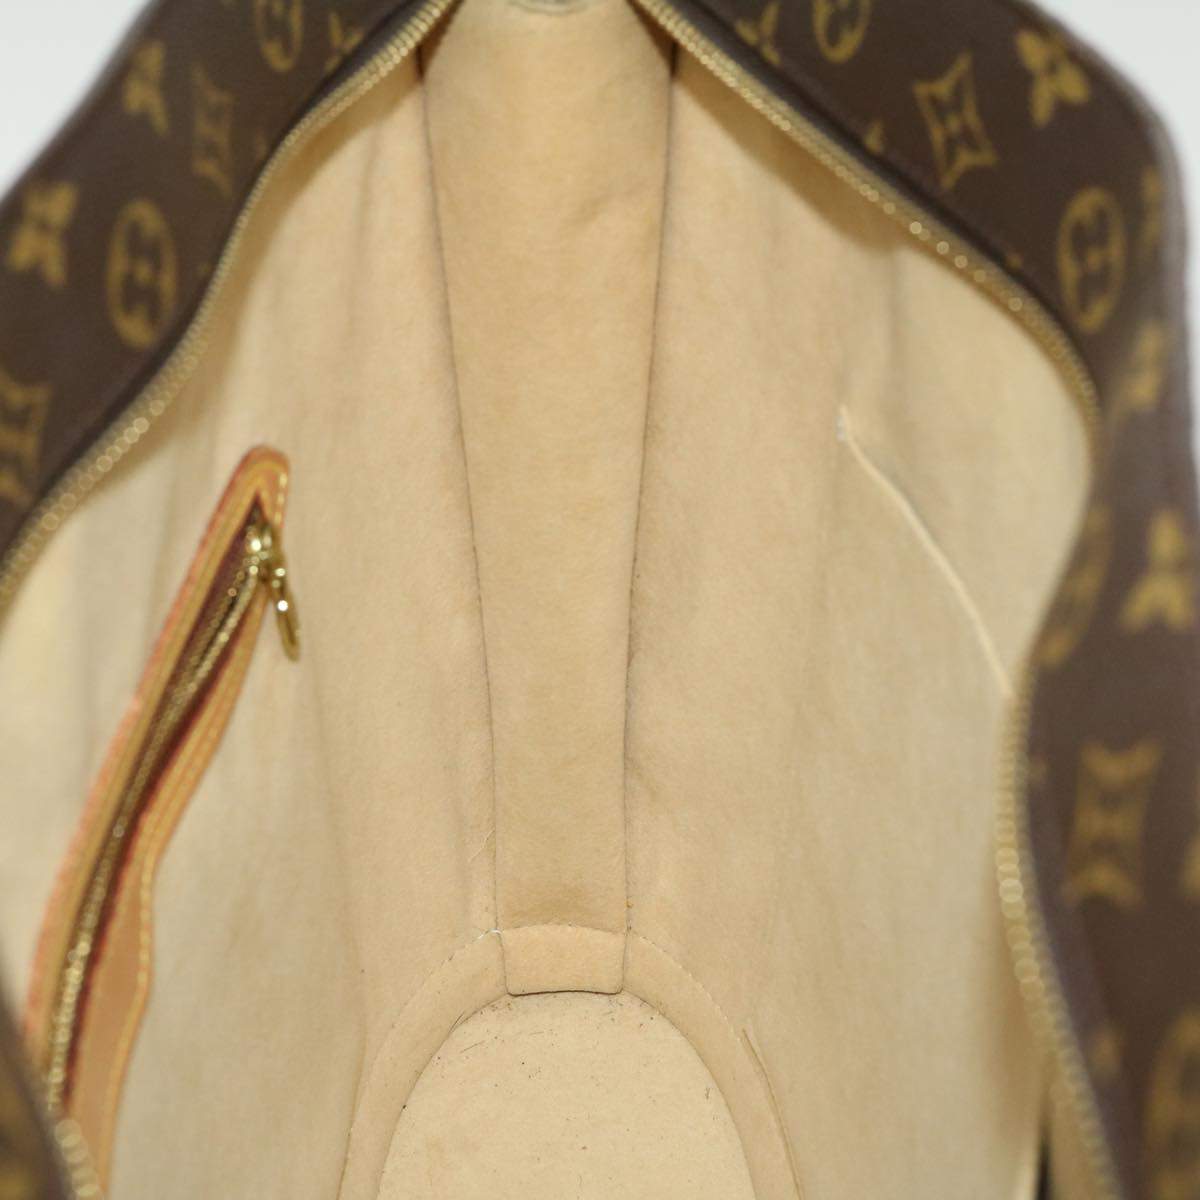 Louis Vuitton Monogram Babylone Tote Bag M51102 LV Auth jk1448 Louis Vuitton